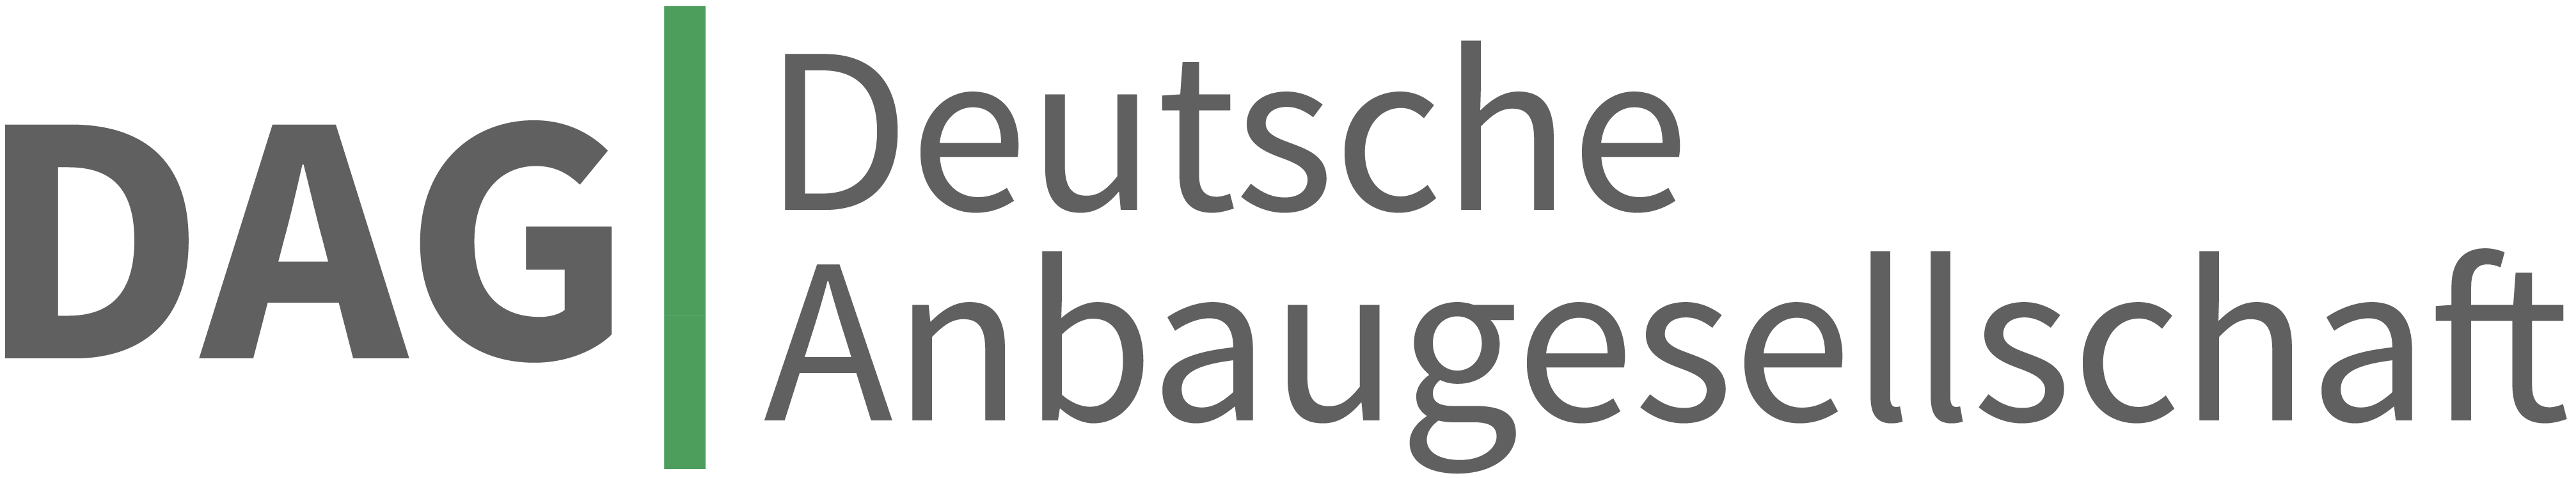 Deutsche Anbaugesellschaft DAG GmbH - Technologie- und Anbauunternehmen